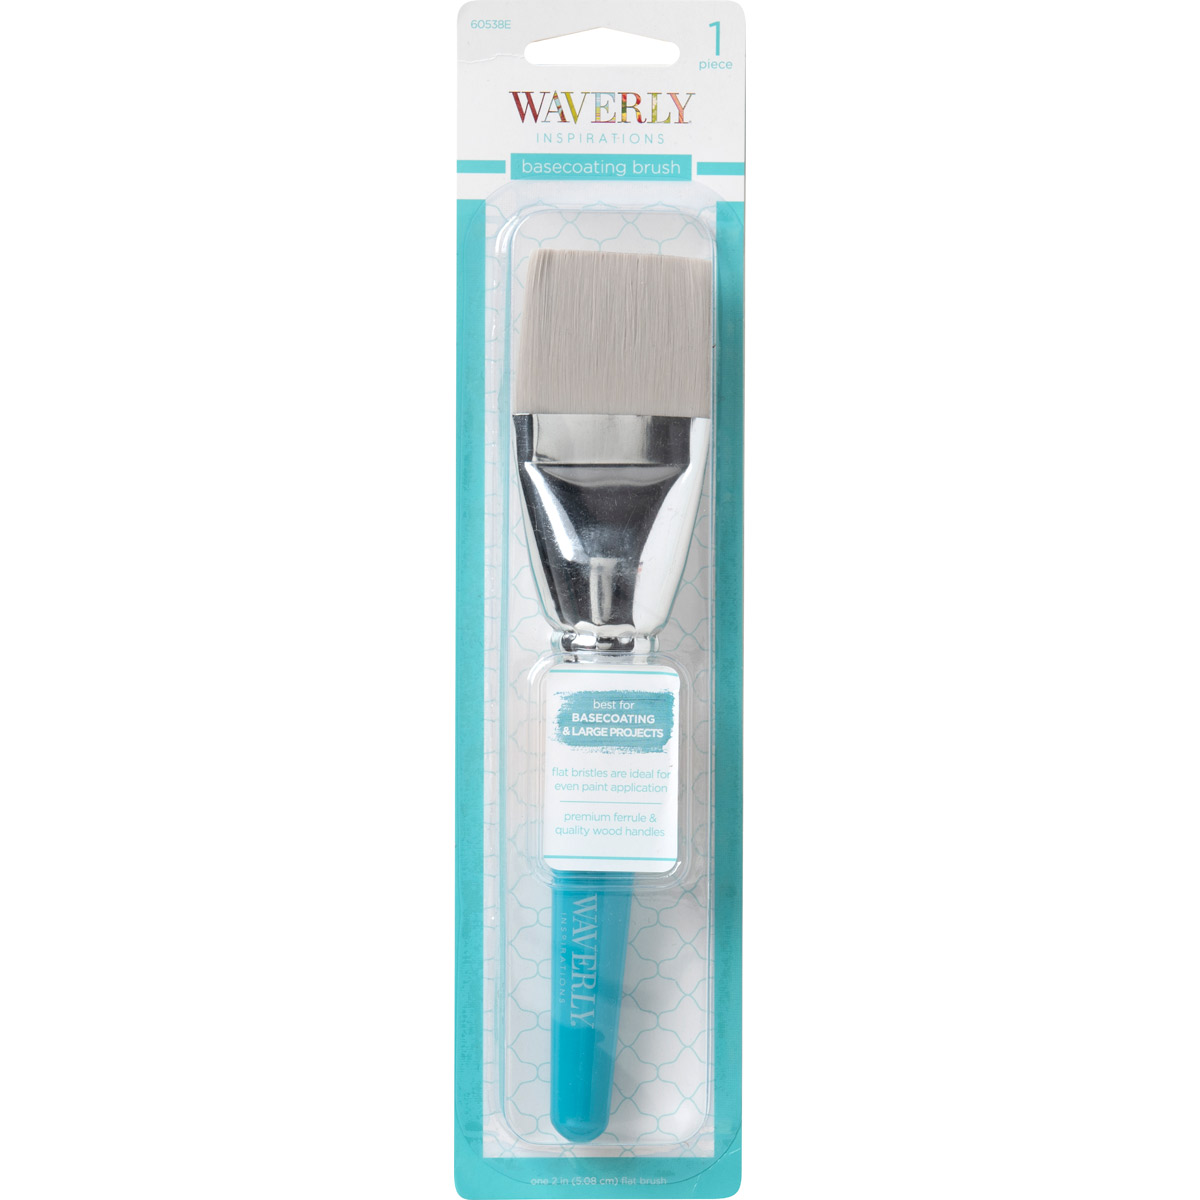 Waverly ® Inspirations Brushes - Basecoating - 60538E